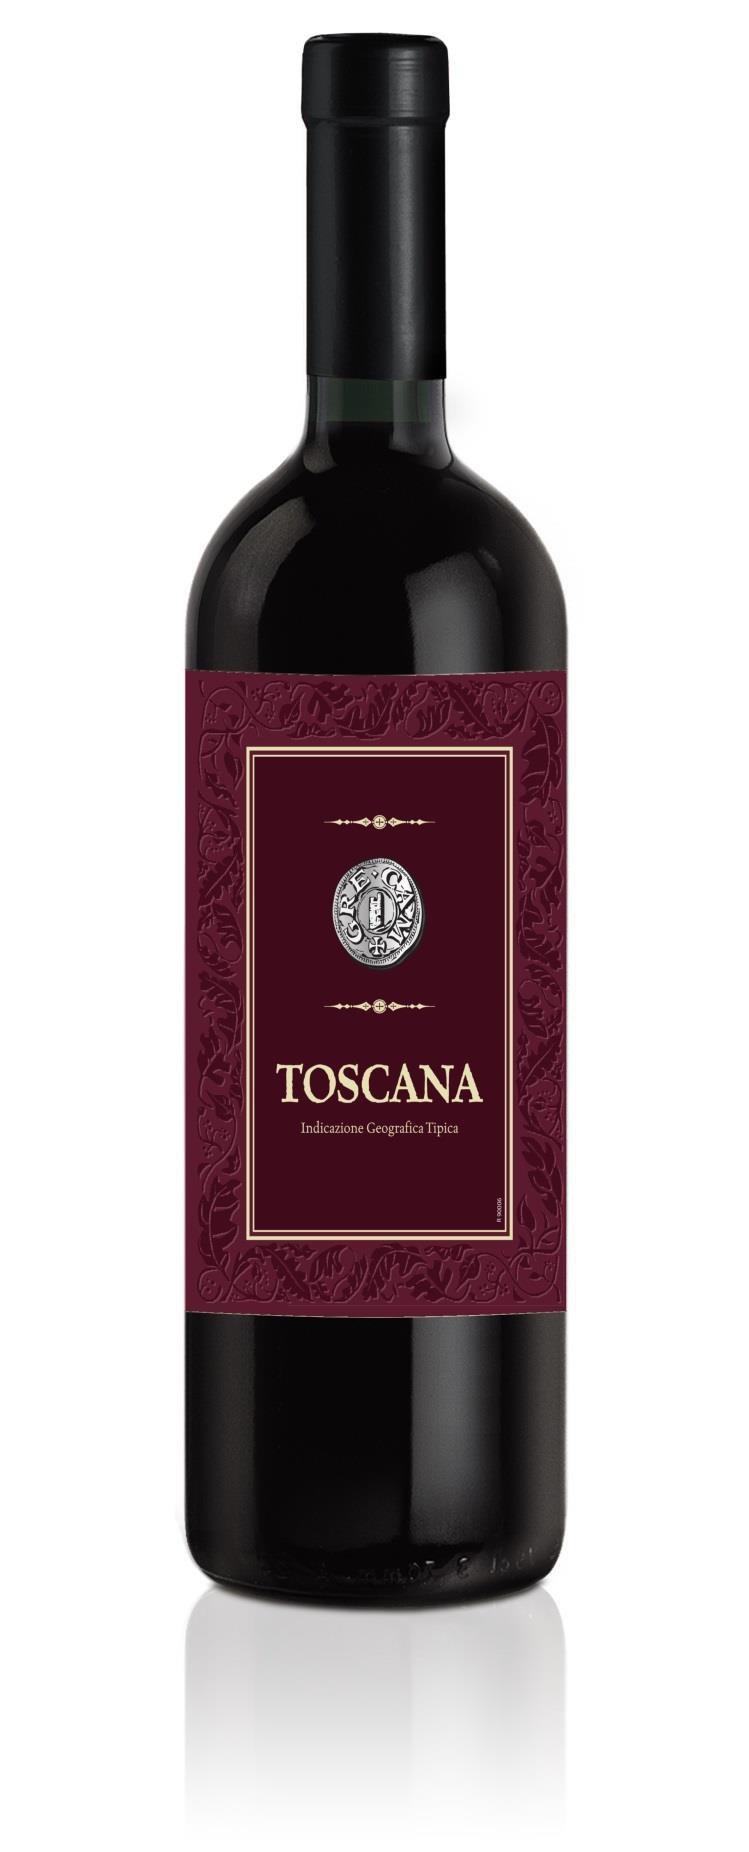 TOSCANA I.G.T. GRE.CAM Toscana I.G.T. Toscana Sangiovese 85% Ciliegiolo 15% Fine di Settembre / End of September In bottiglia In bottle 13,00 % 2,00 5,20 94 5000 piante / Ha 150 200 mt slm Vino dal